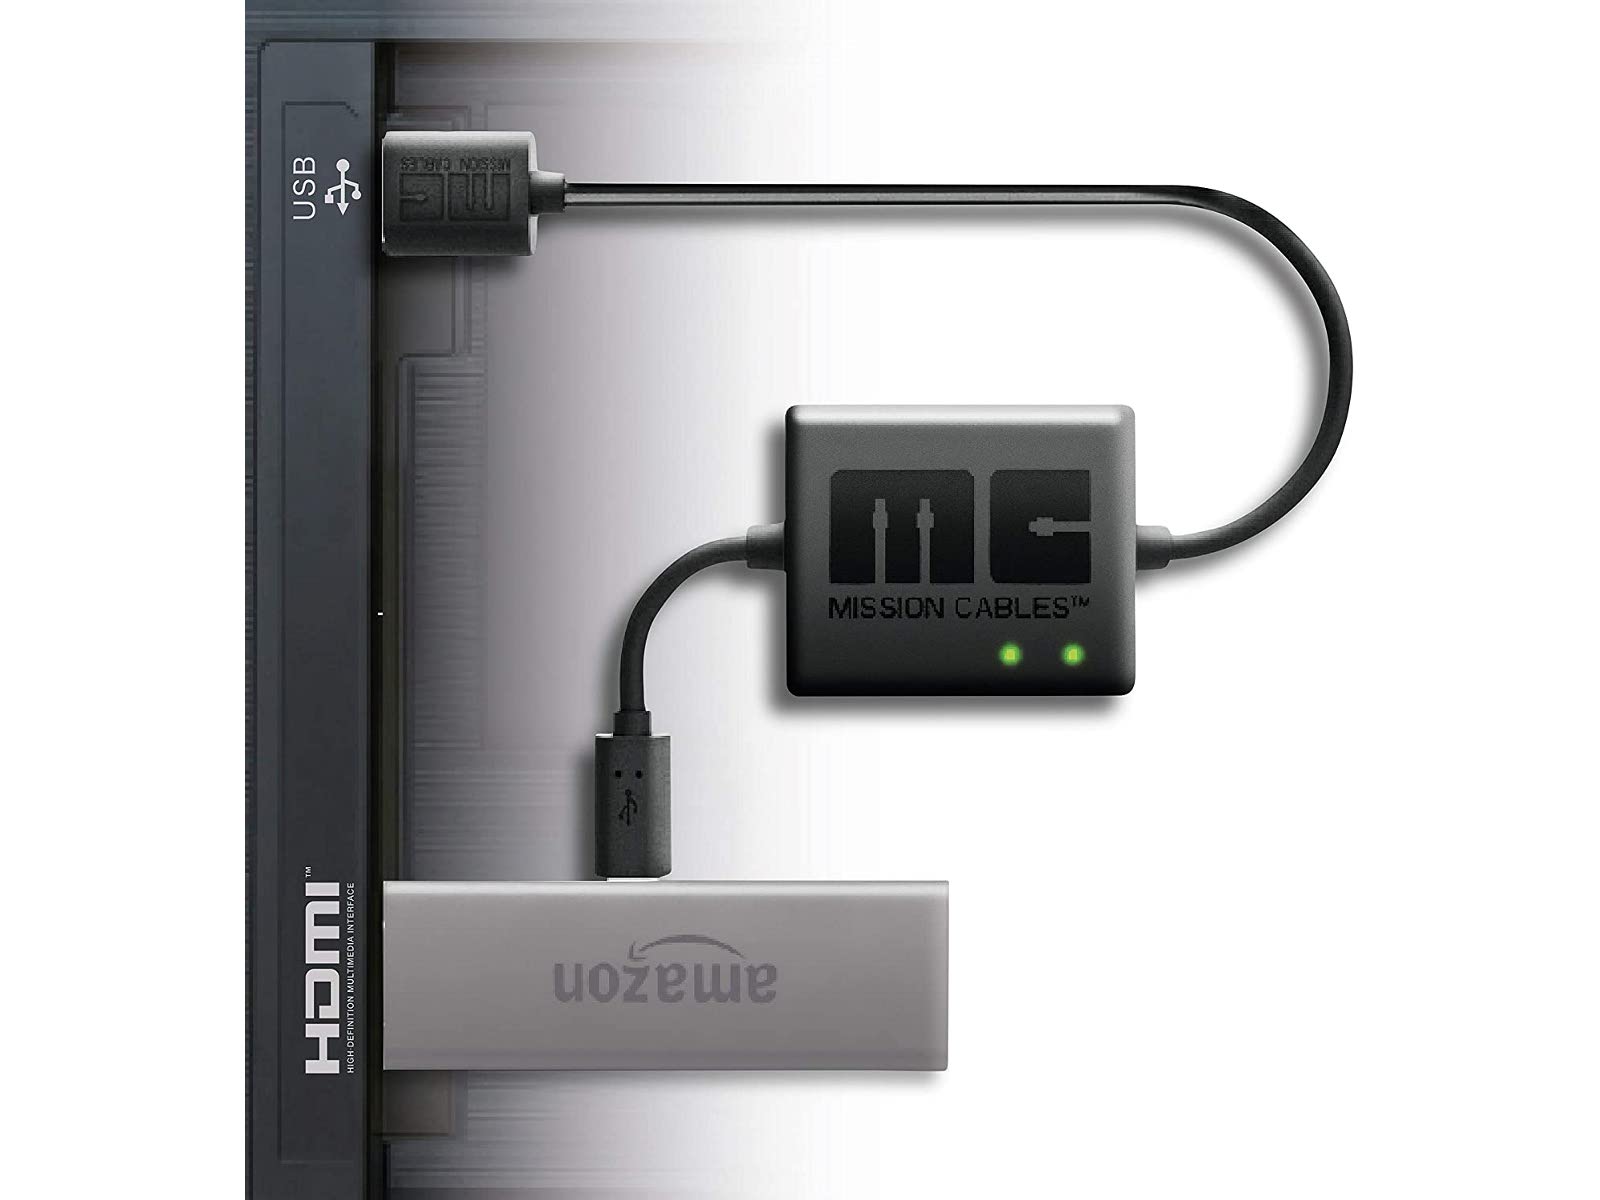 Fire TV StickのUSBポートとテレビのUSBポートを接続する「Mission cables」を使えば配線もスッキリ。ただしテレビとの相性は若干ありますので要注意（写真はAmazonのサイトより）